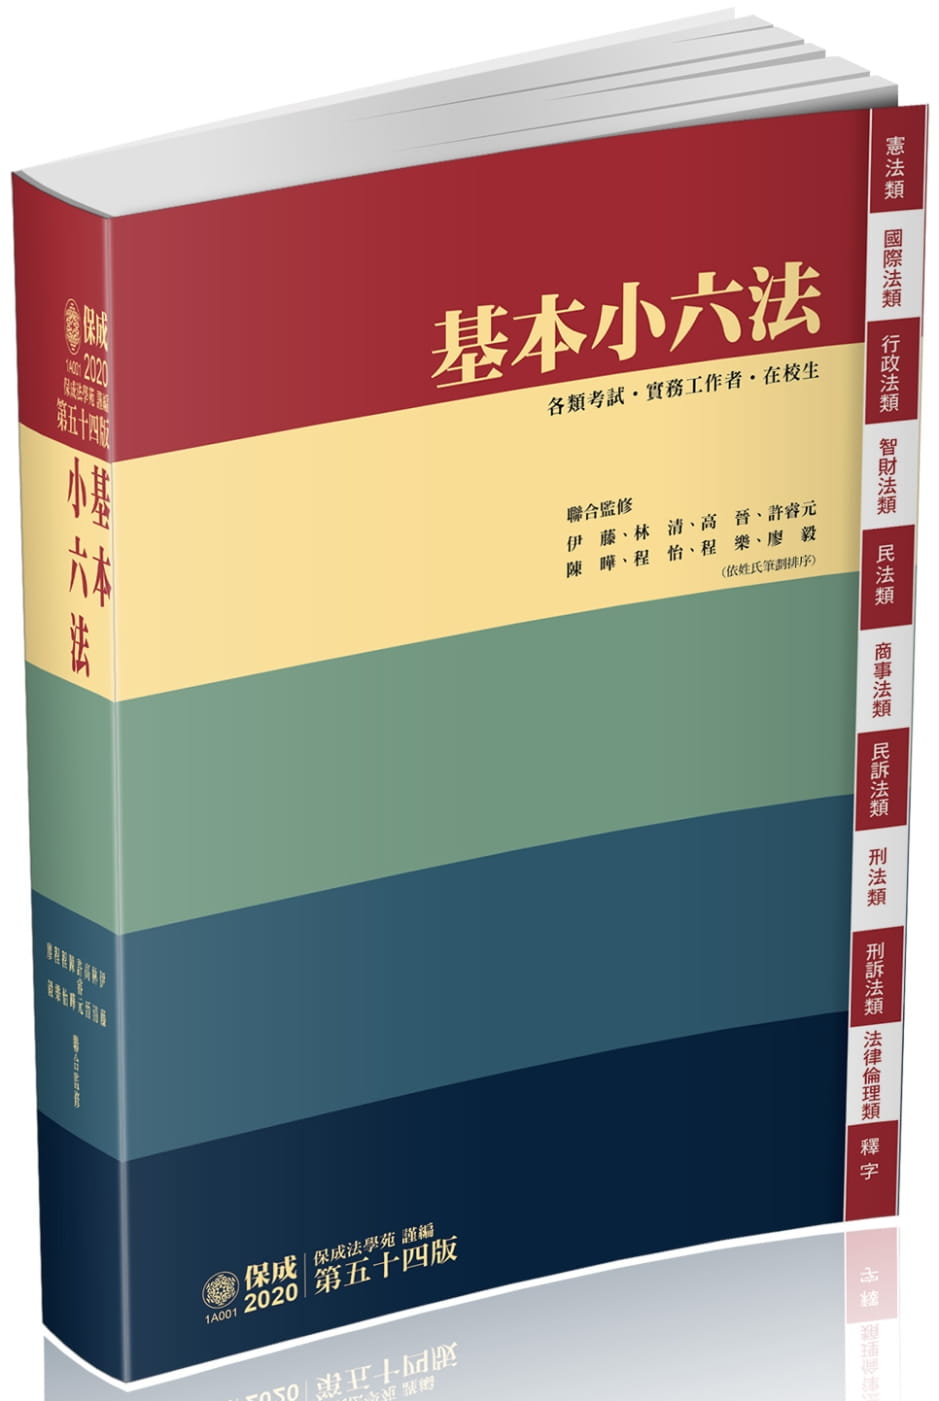 基本小六法-54版-2020法律法典工具書系列(保成)